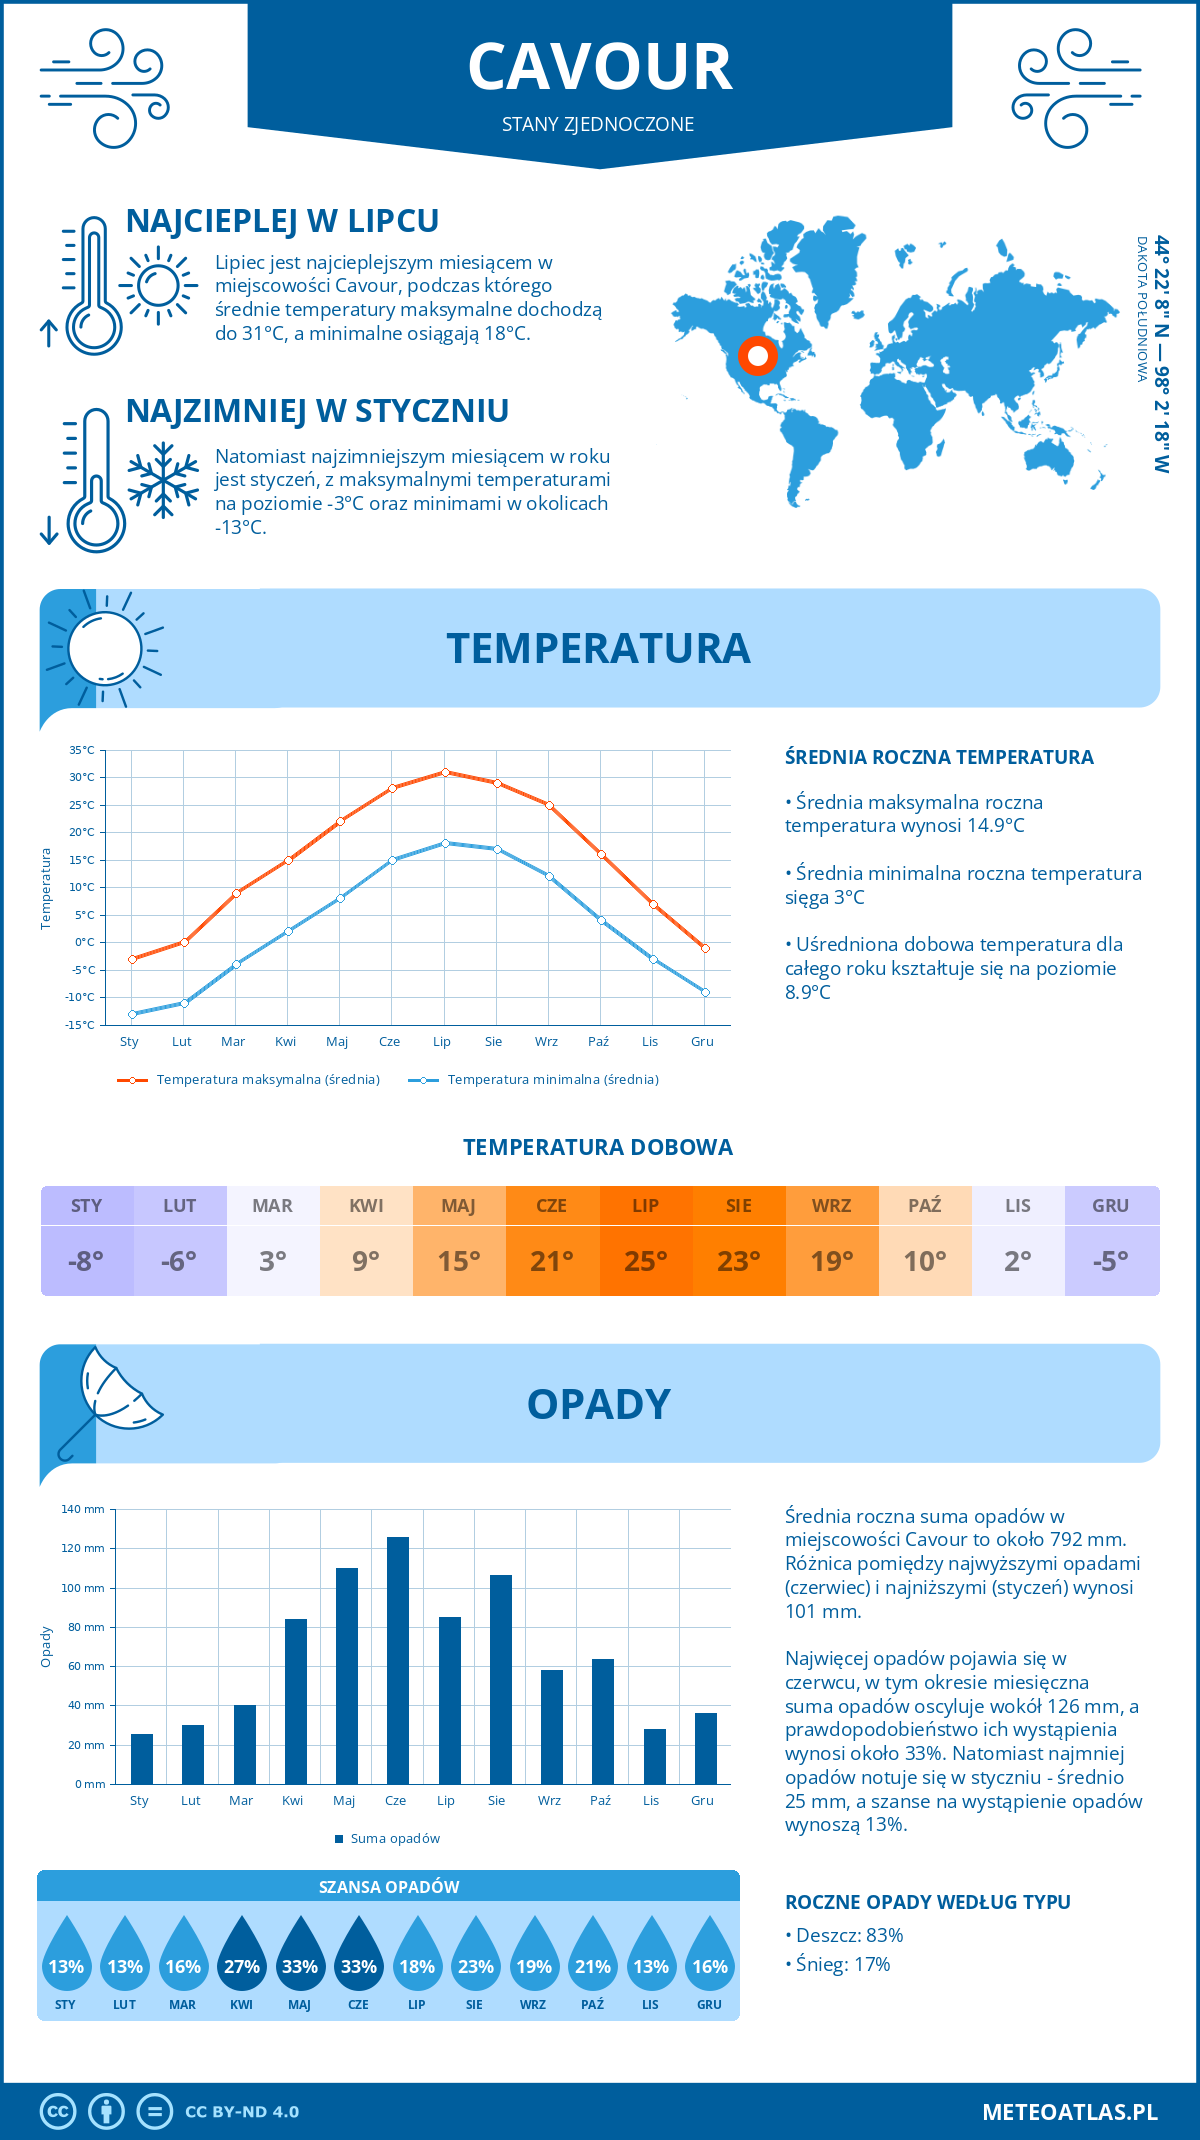 Pogoda Cavour (Stany Zjednoczone). Temperatura oraz opady.